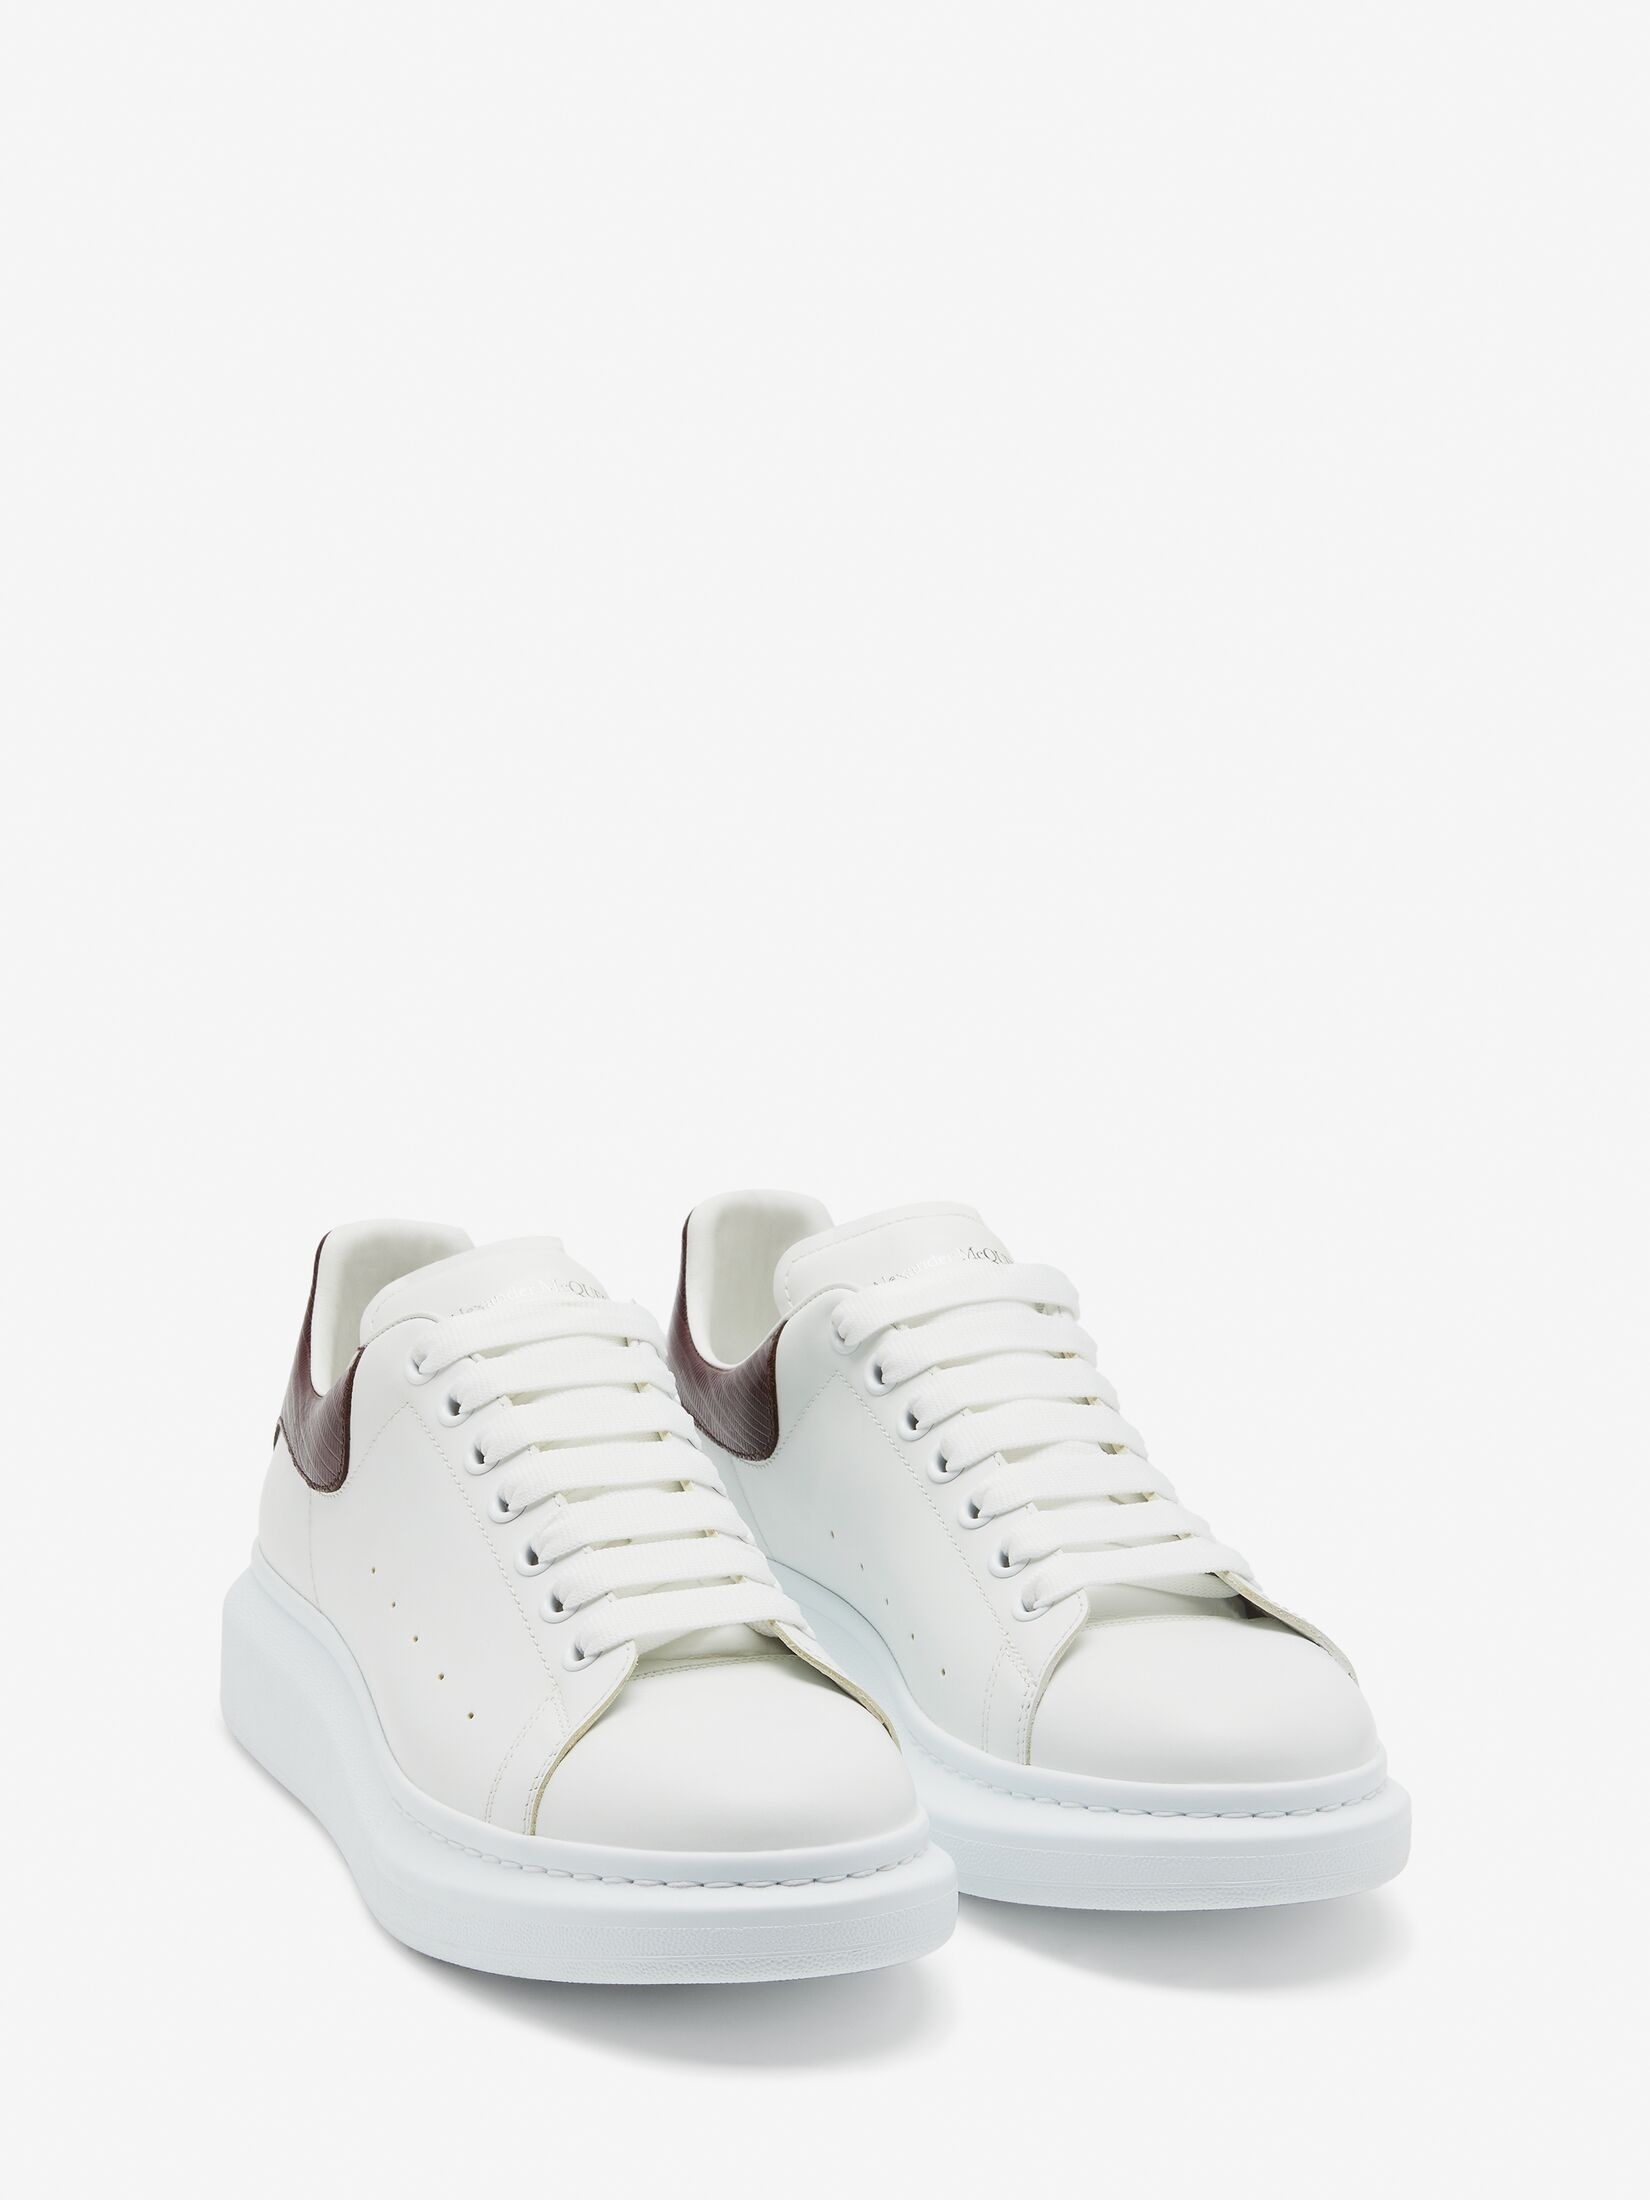 Men's Oversized Sneaker in White/burgundy - 2